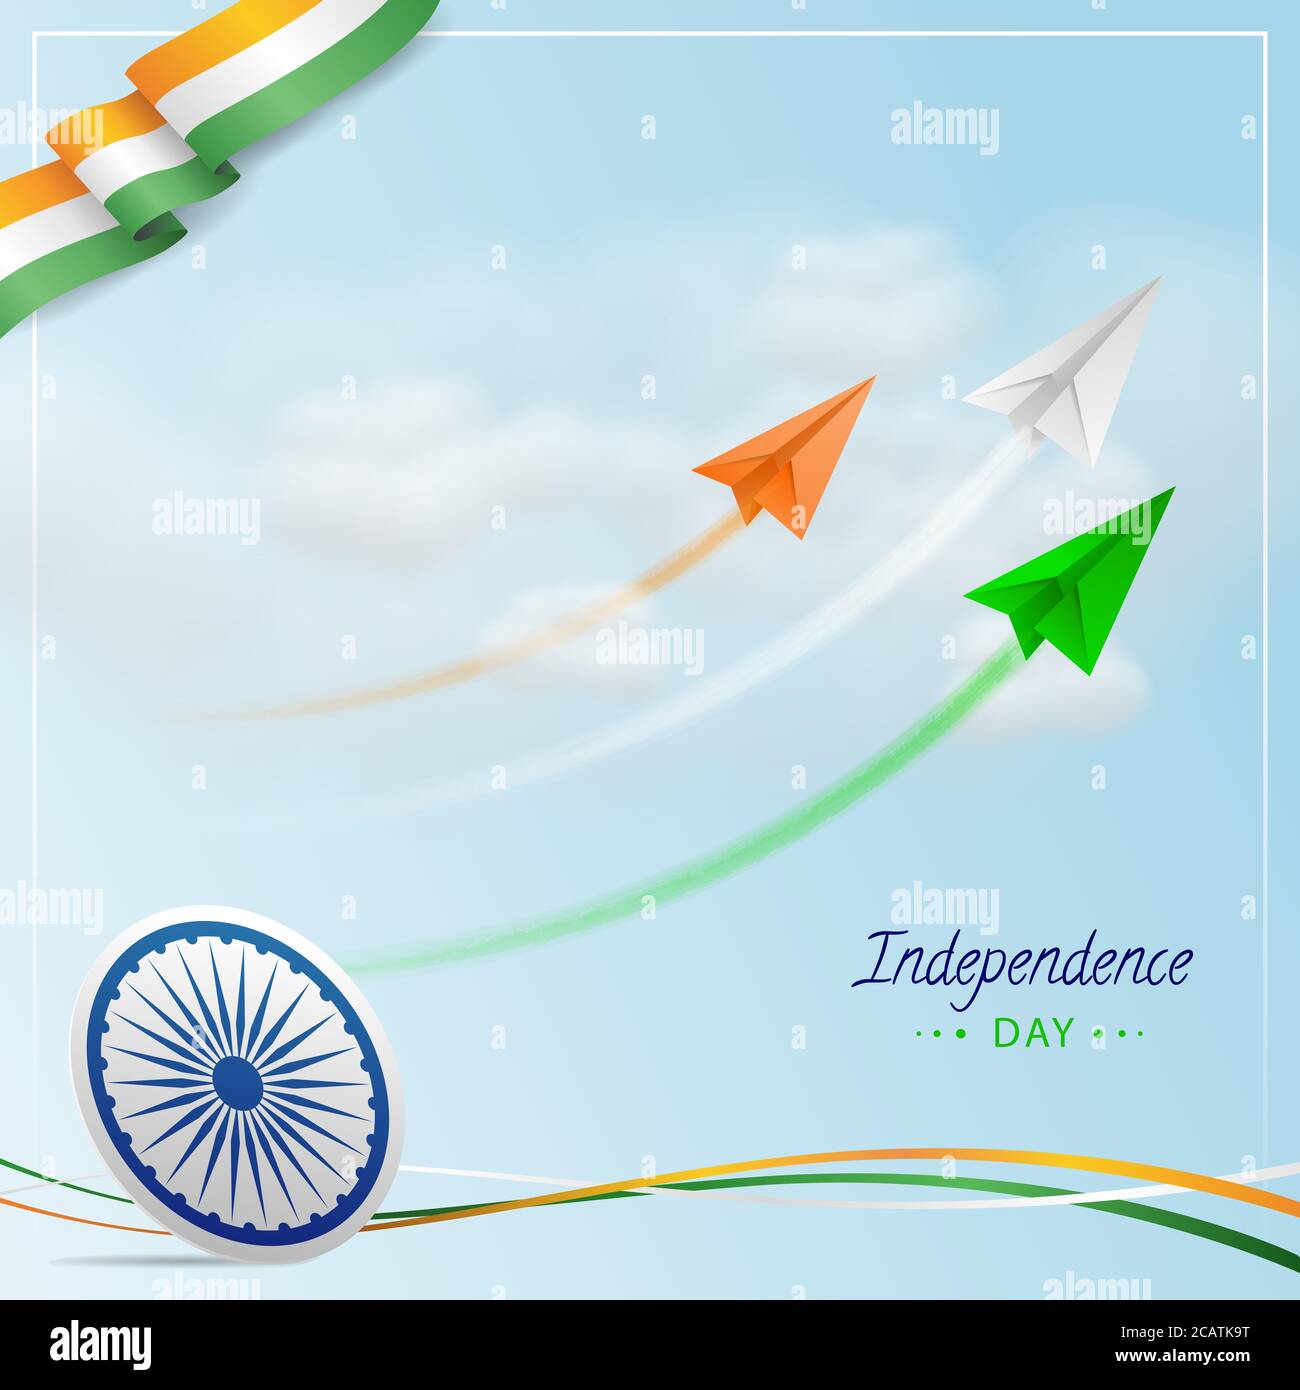 Indian Independence Day mit indischen Tri Farben fliegenden Papier Jet Flugzeuge mit Trails, Ashoka Rad, National Indian Flag Tricolors Welle auf Bewölkt Blau Stock Vektor